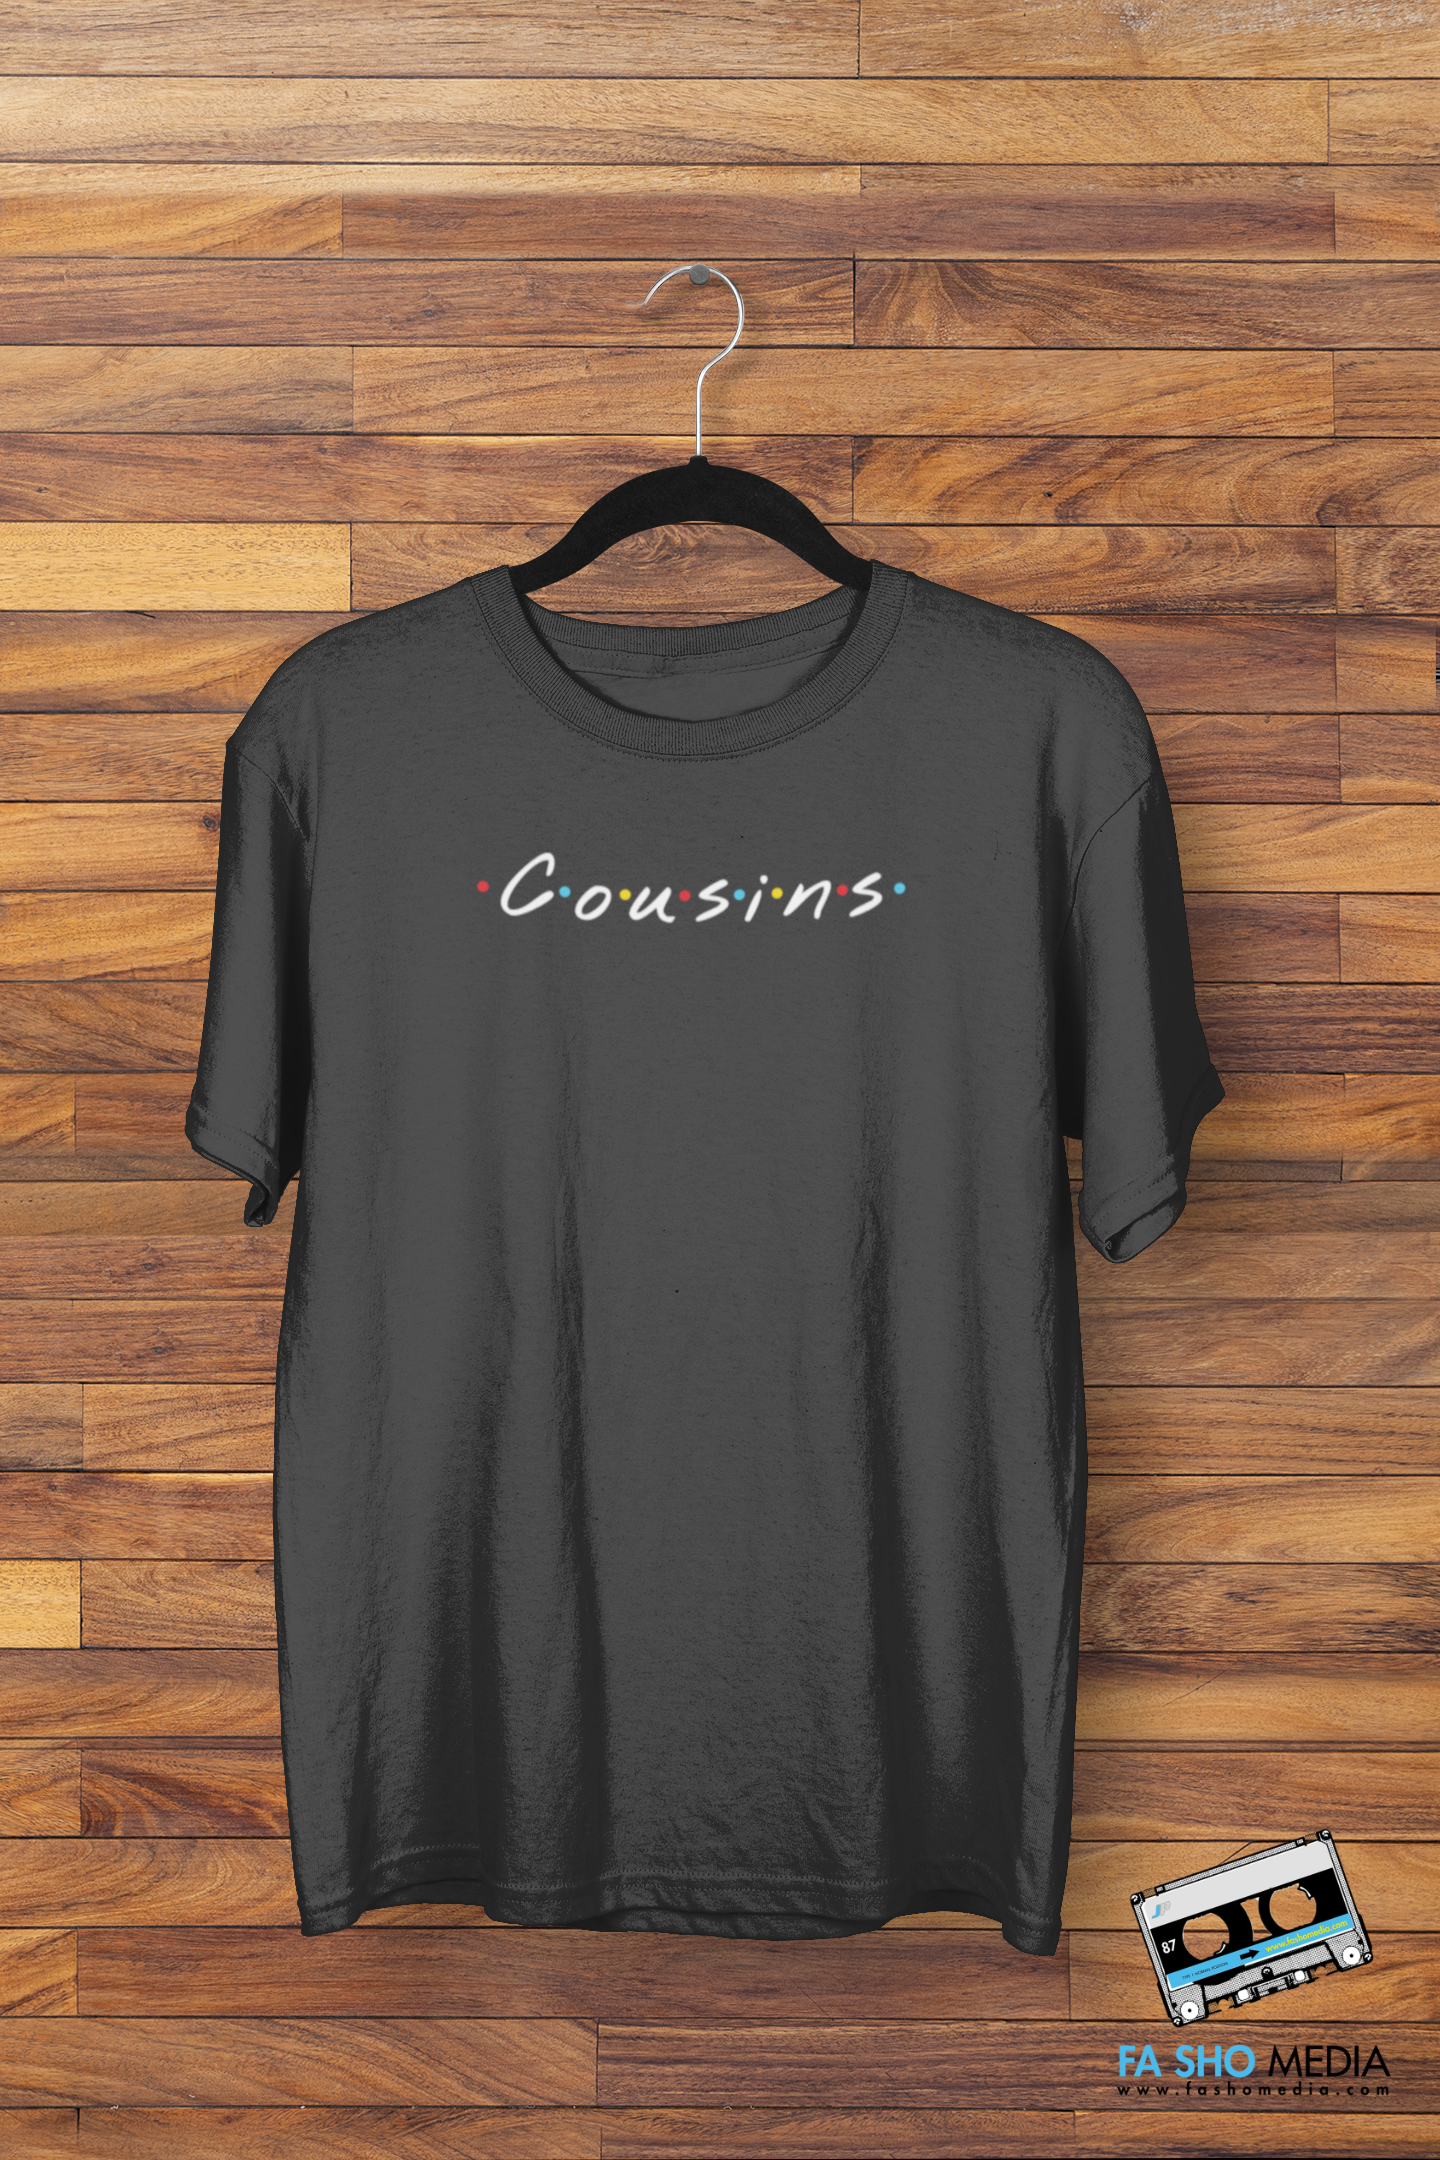 Cousins Shirt